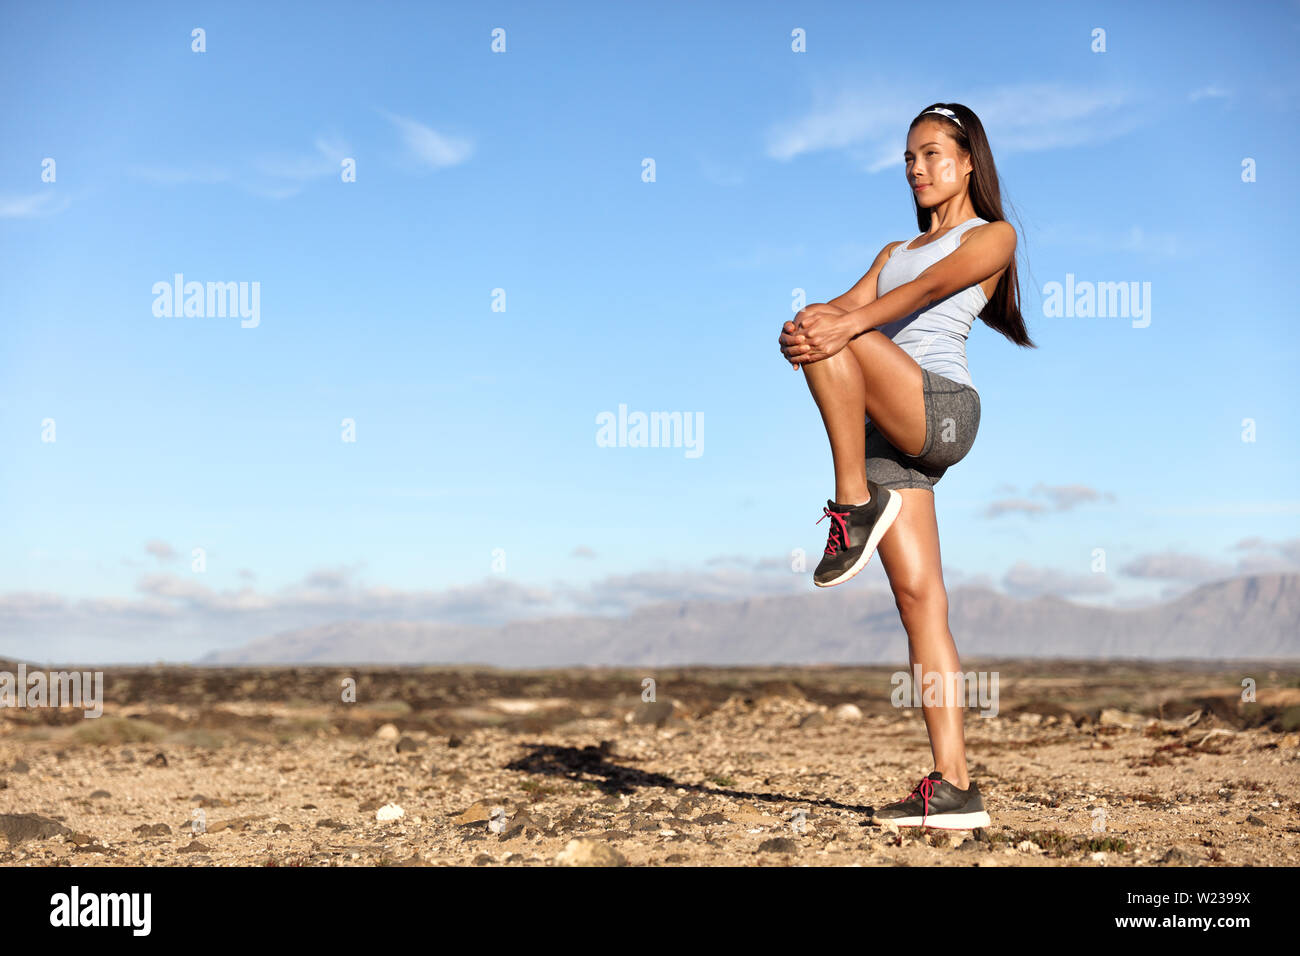 Ständigen Gluteus maximus Bein strecken. Fitness Frau, dehnen Übungen trainieren Stretching glutes Muskeln und kniesehne als Warm-up für cardio übung. Trail im Sommer im Freien Natur. Stockfoto